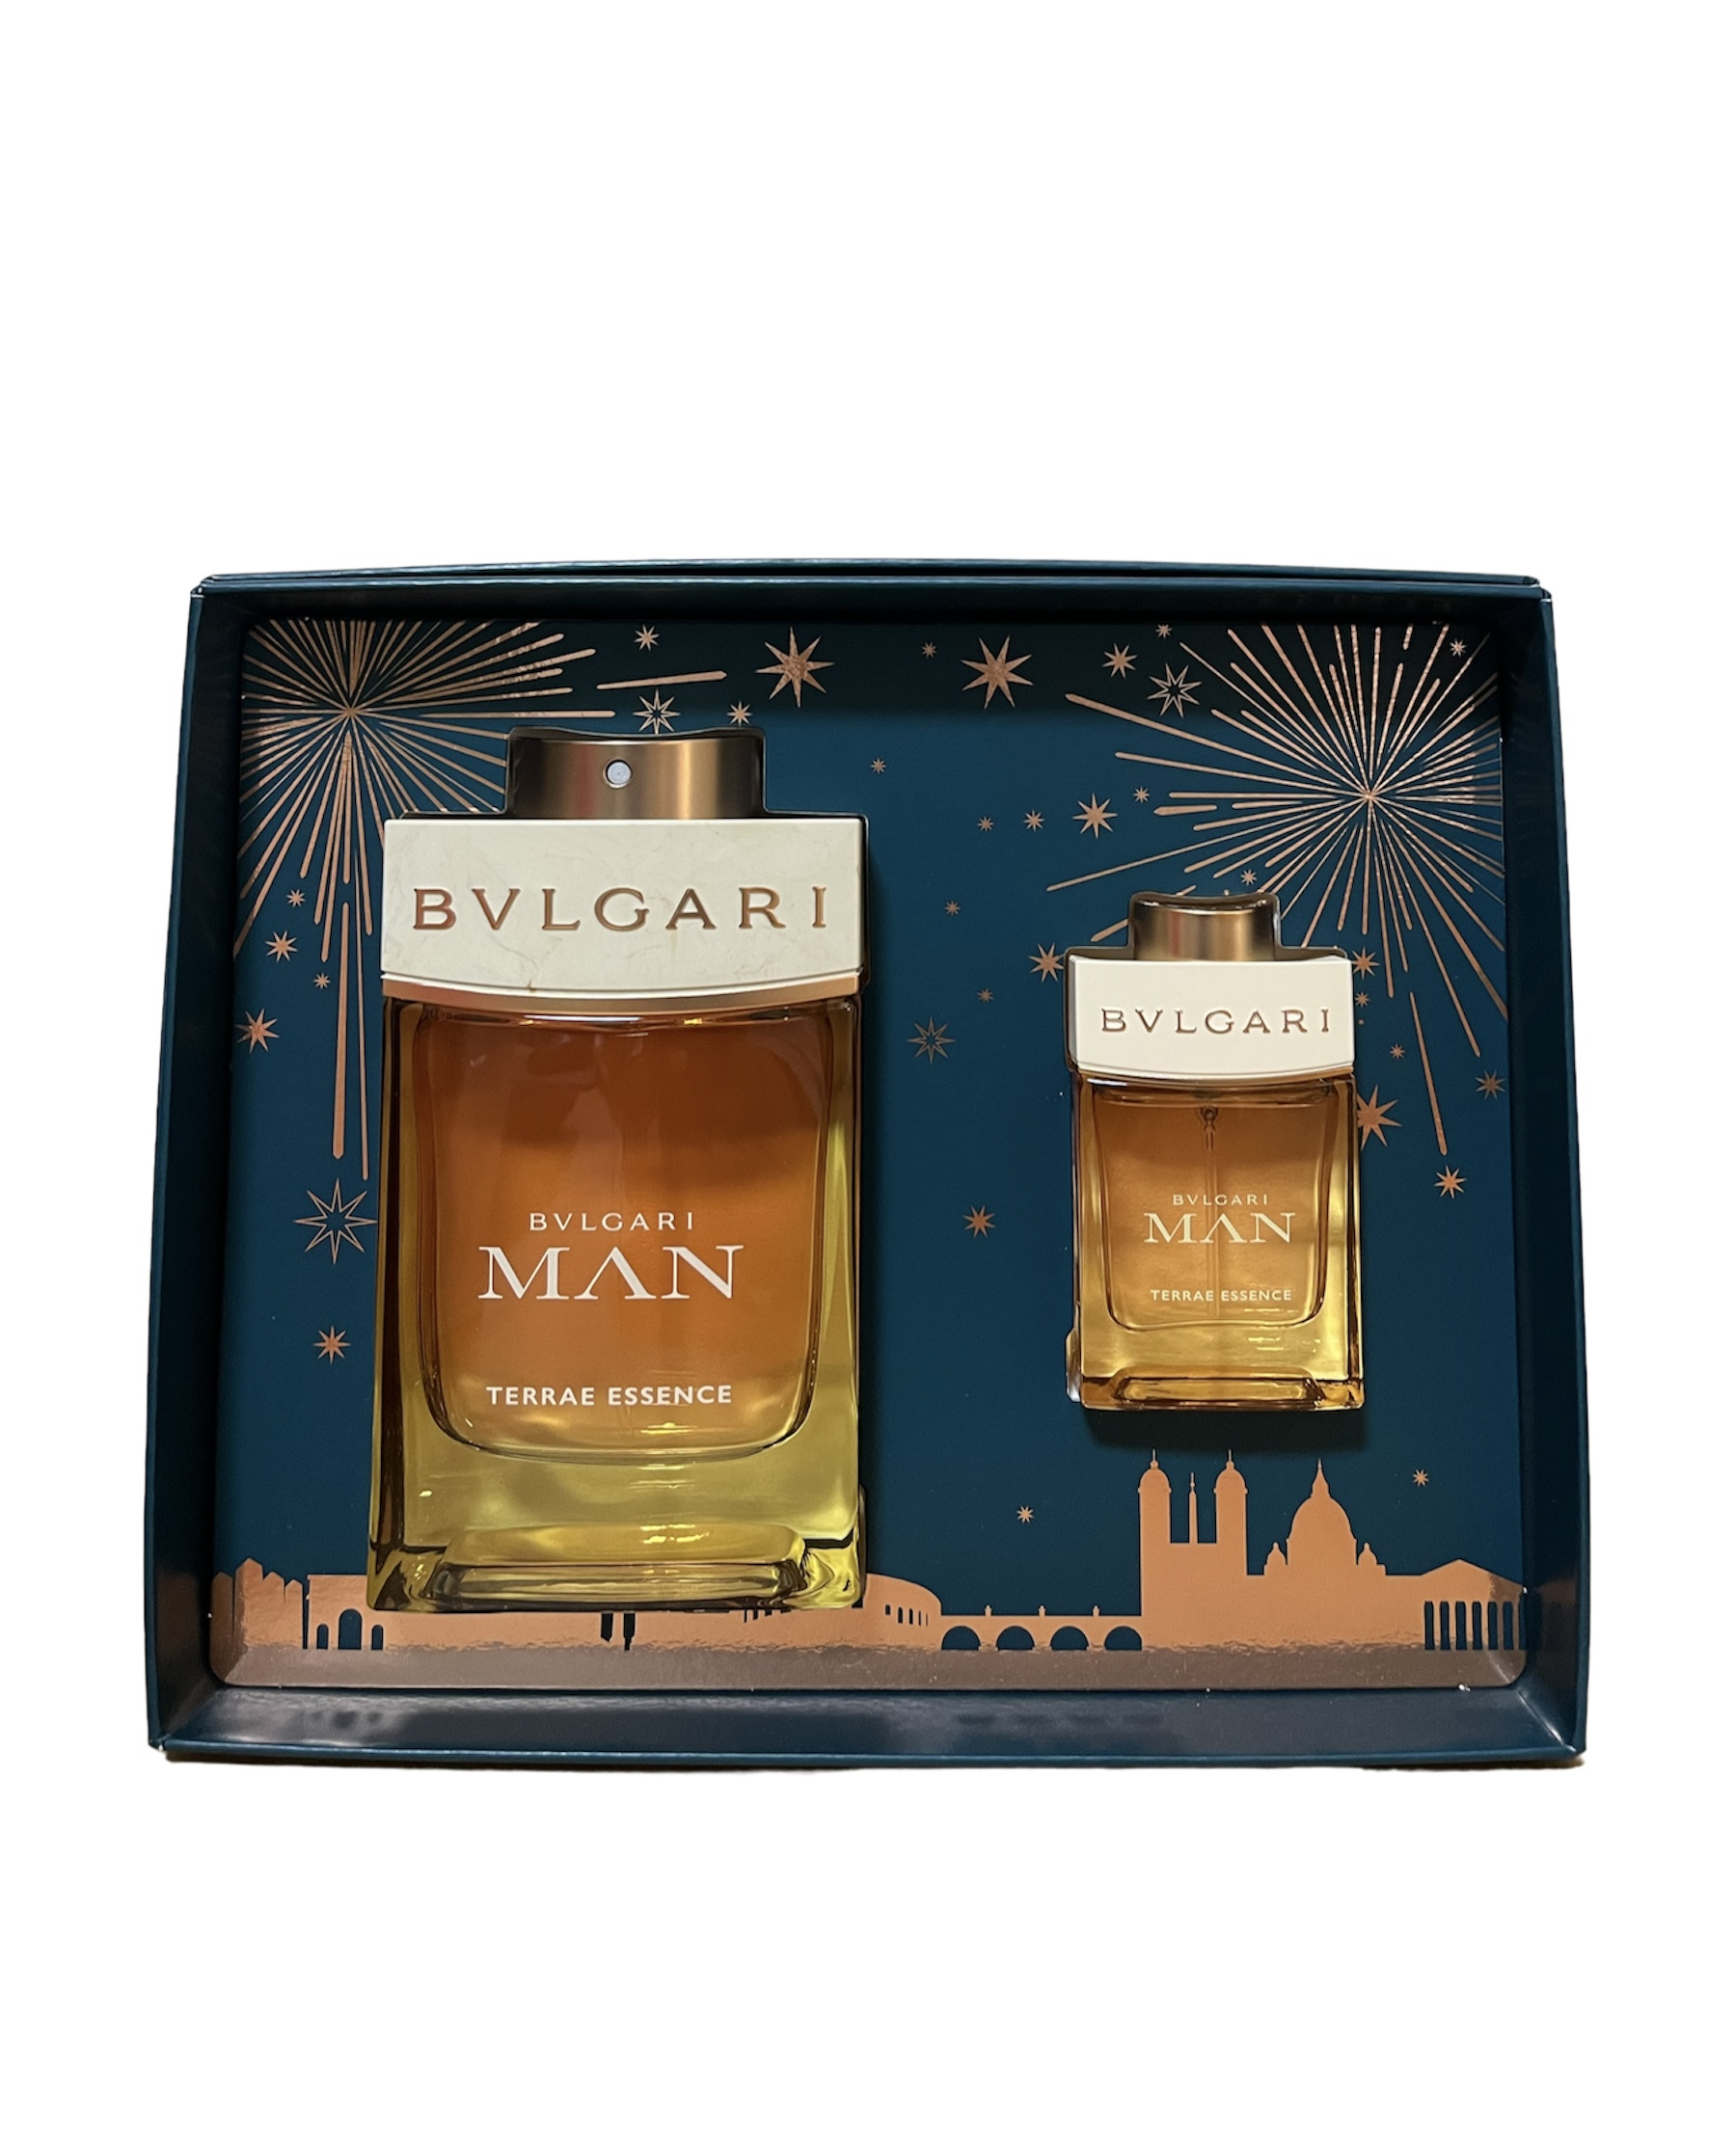 Bvlgari Man Terrae Essence Eau de Parfum 100ml + 15ml Mini Geschenkset